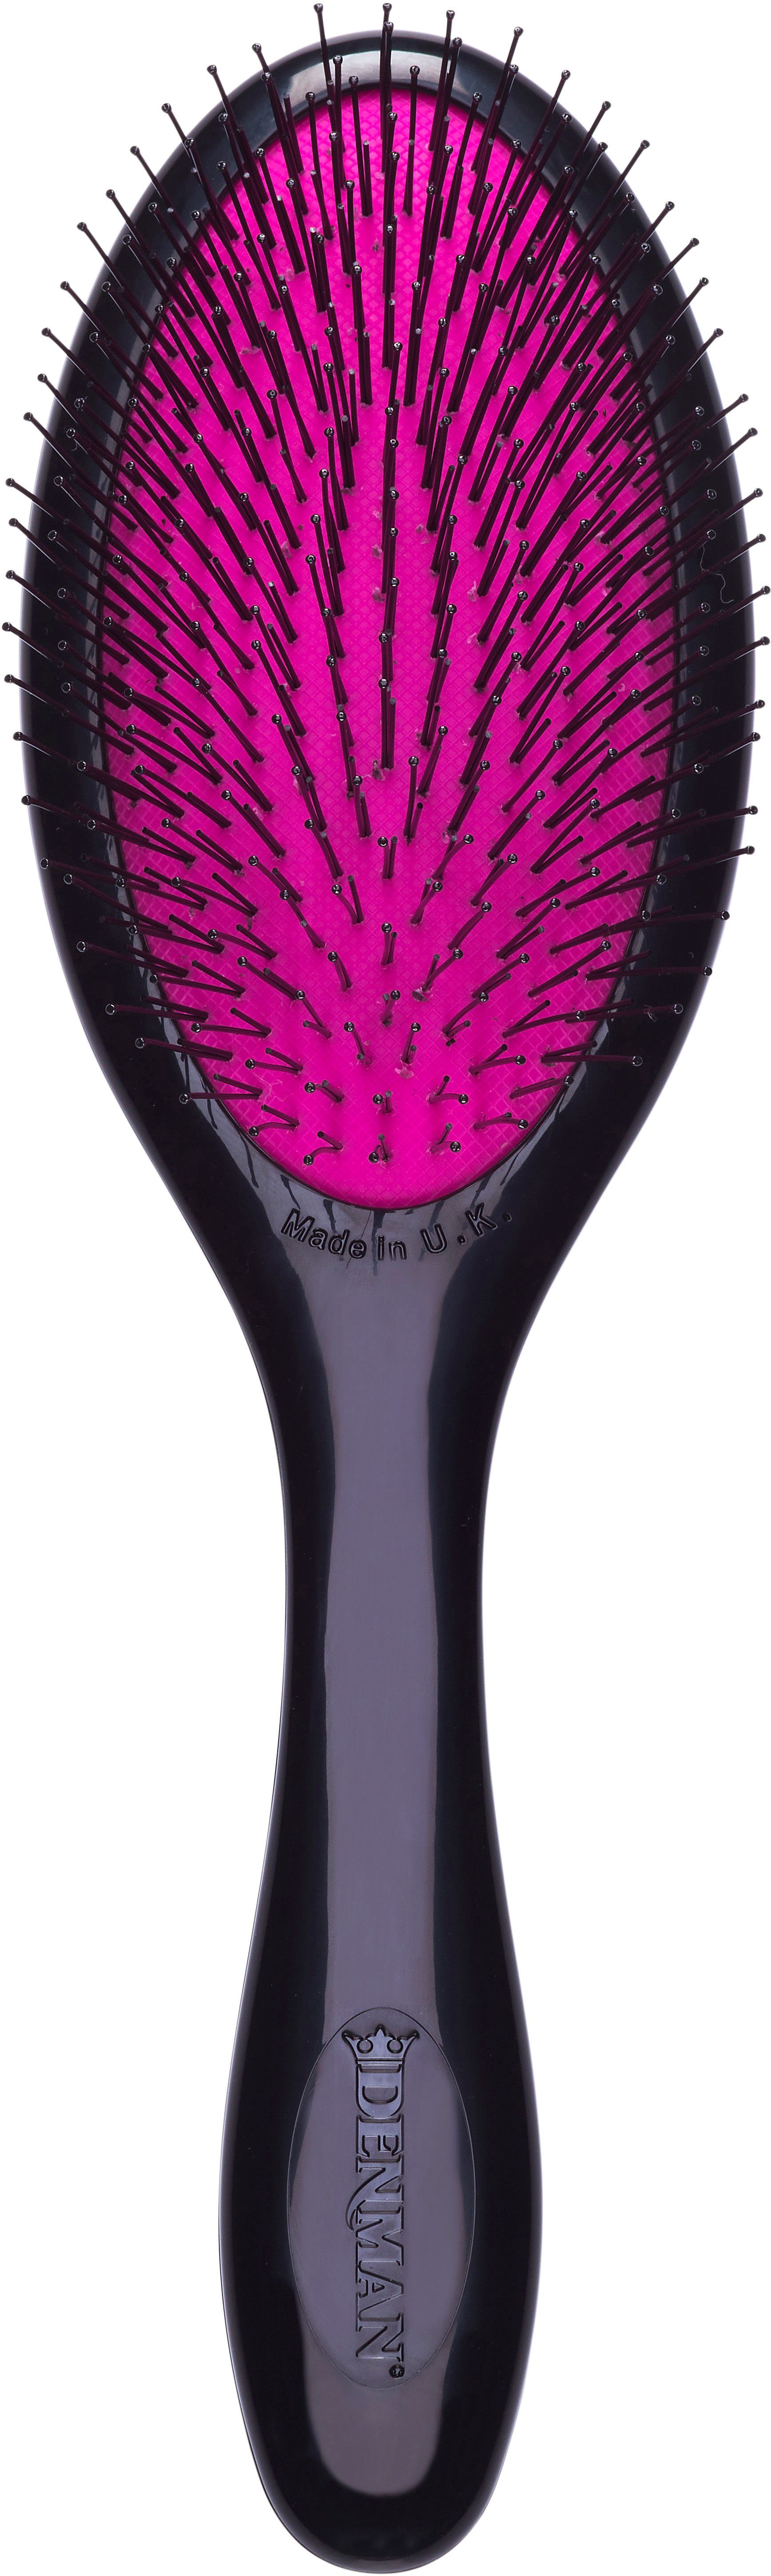 Qualität ist sehr gut DENMAN Haarbürste D93M Tangle Haar schwarz-pink Tamer Entwirrungsbürste feines speziell für und Kinderhaar Gentle